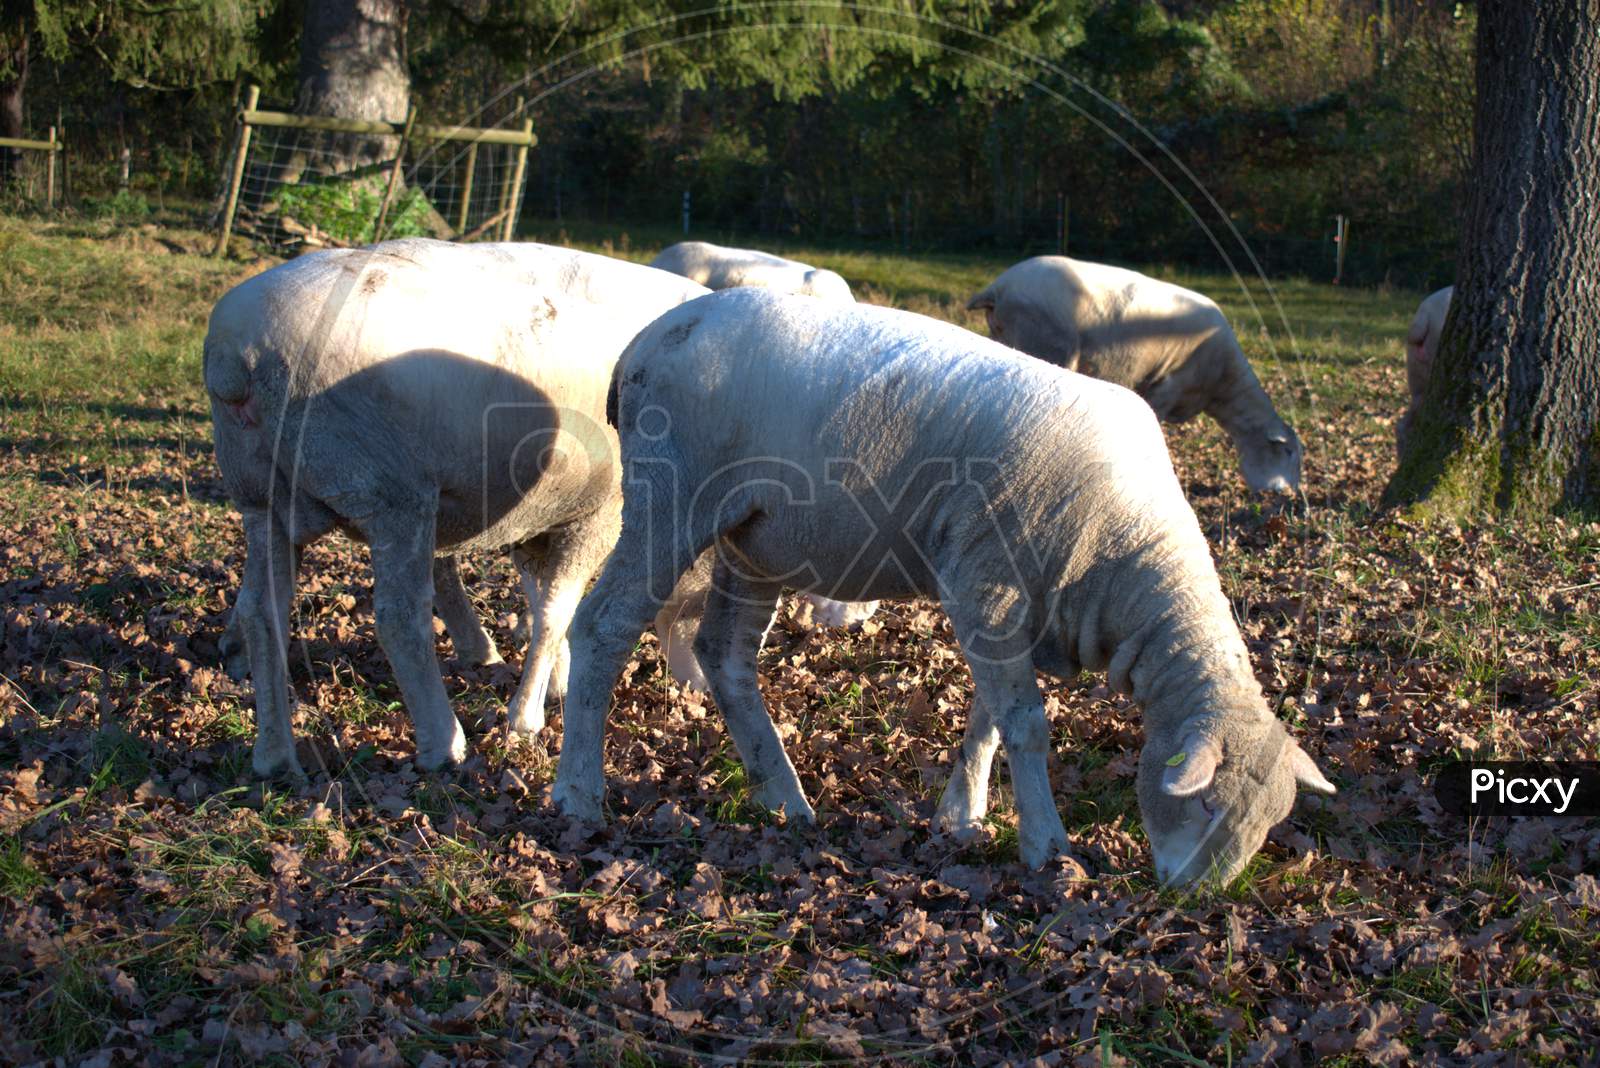 Group of sheep in Schaan in Liechtenstein 14.11.2020